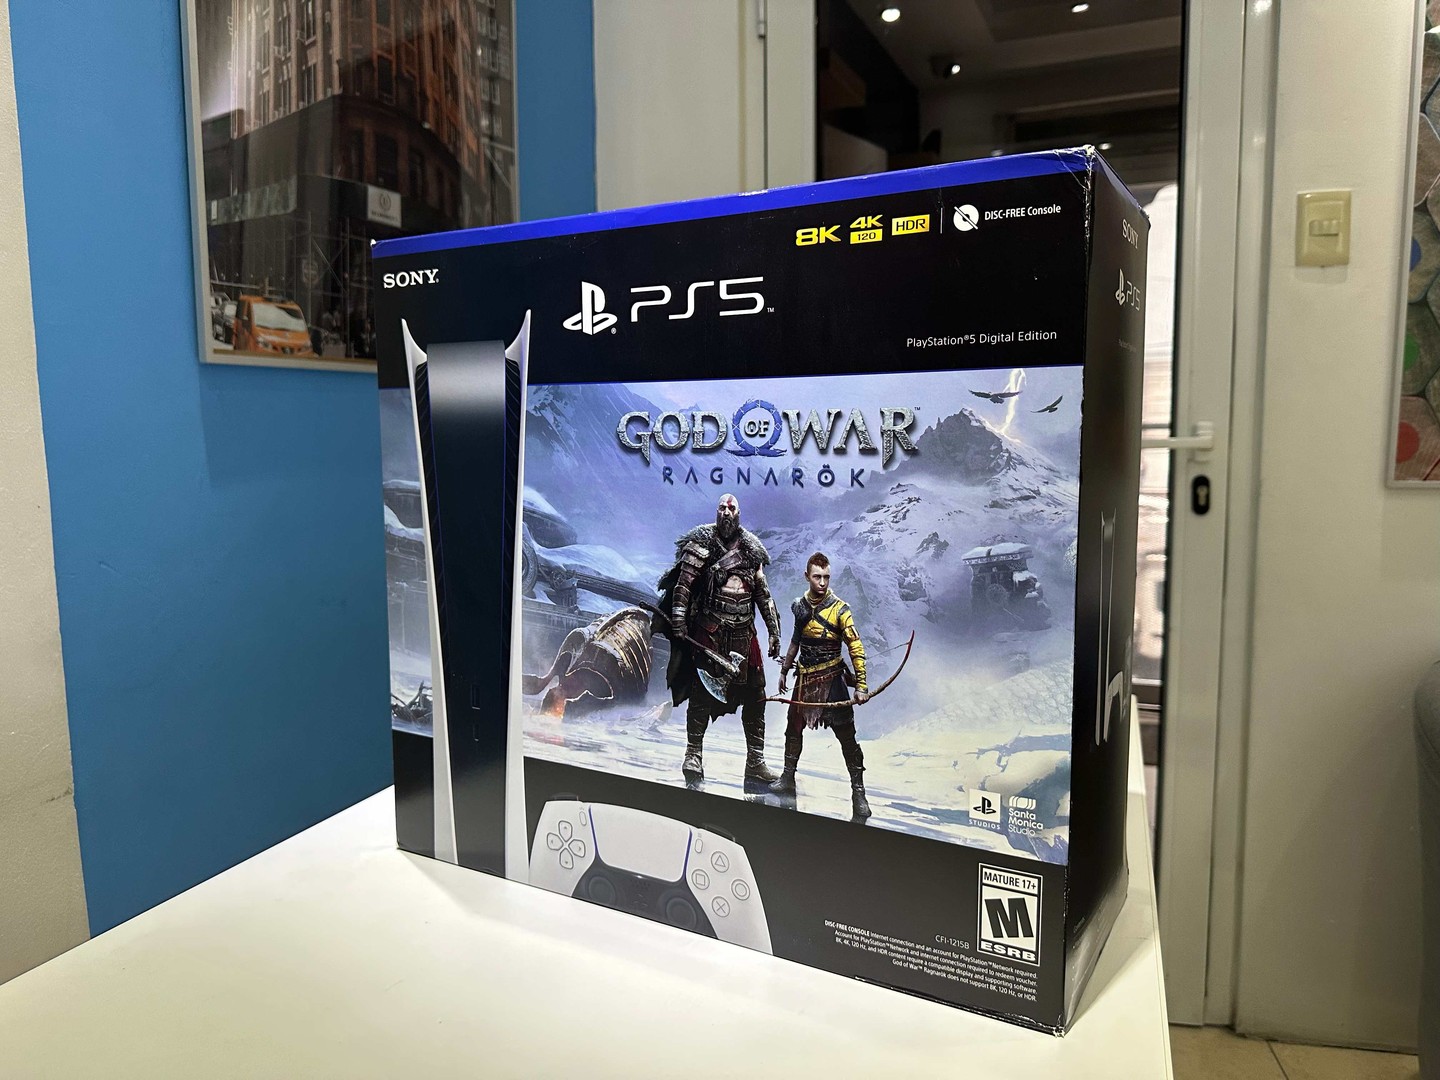 consolas y videojuegos - Vendo Consola PlayStation 5 |God of War Sellados Version Virtual RD$ 32,500 NEG